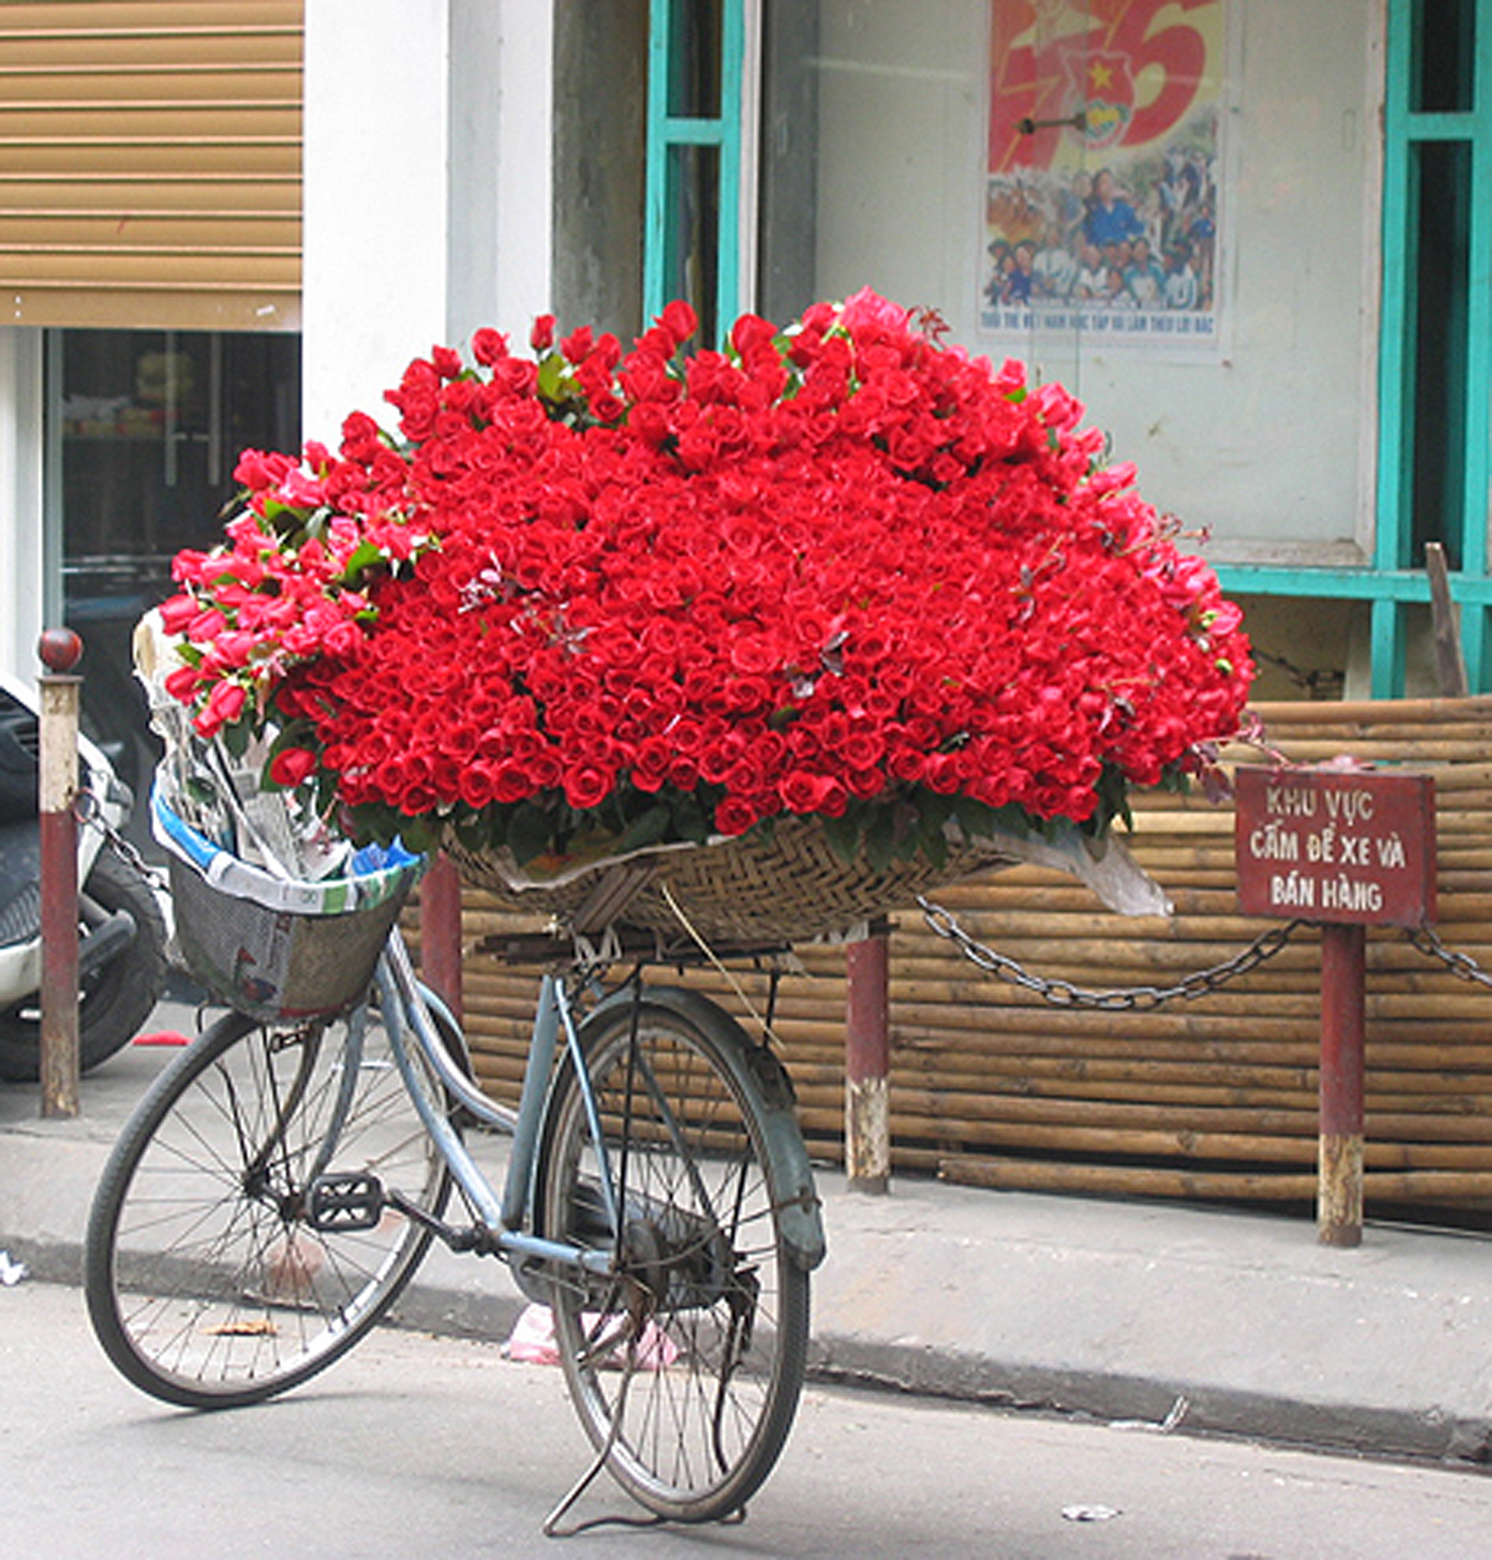 Hanoi Rose bike.jpg